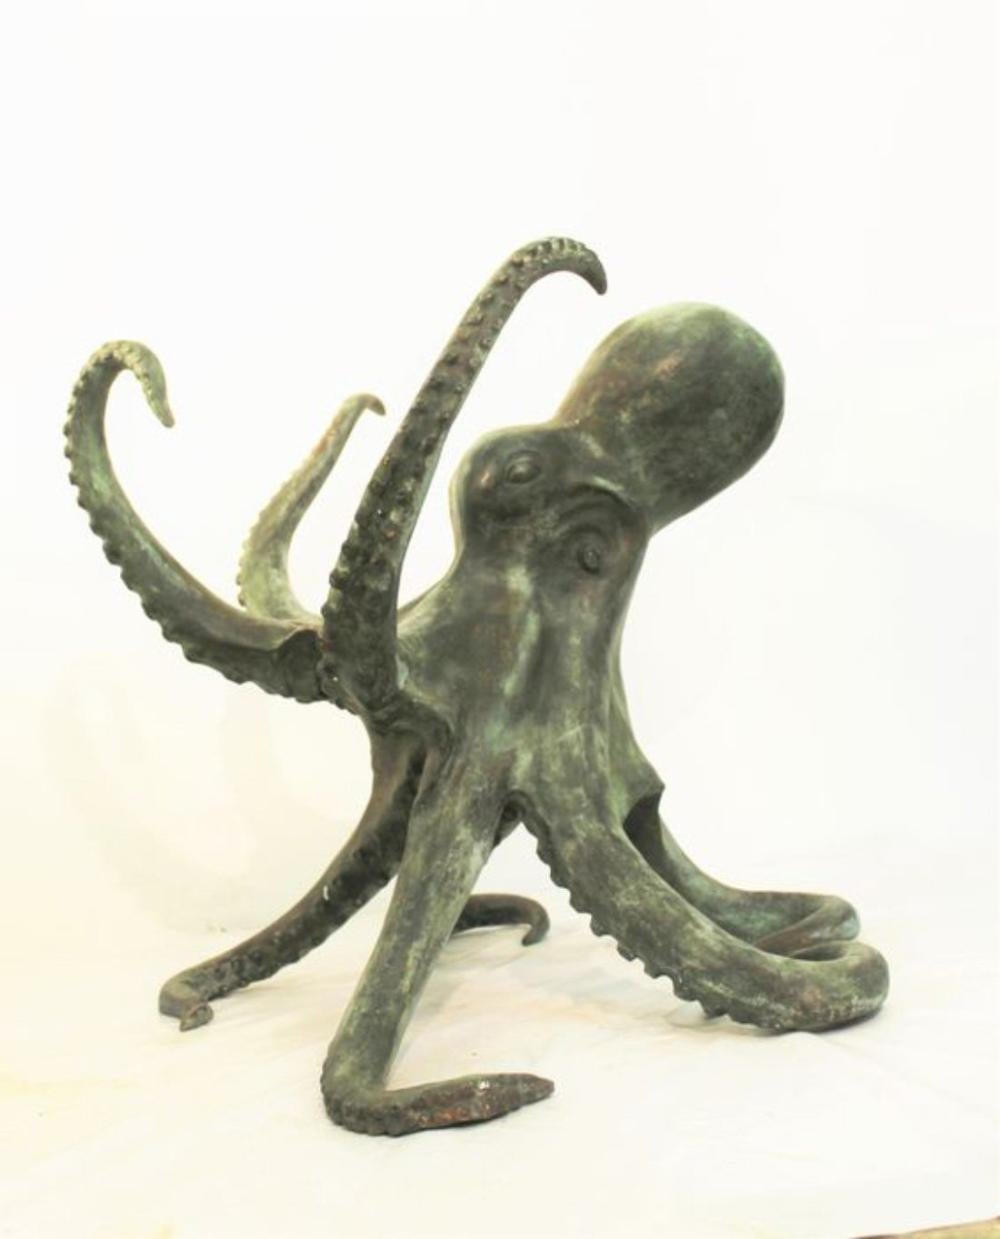 Oktopus in Bronze Oktopus-Skulptur in Bronze, verwendet für Tischsockel, die Skulptur ist perfekt original in den kleinsten Details, 20. Jahrhundert. Guter Zustand - gebraucht mit kleinen Alterserscheinungen und Schönheitsfehlern Abmessungen: 78 x